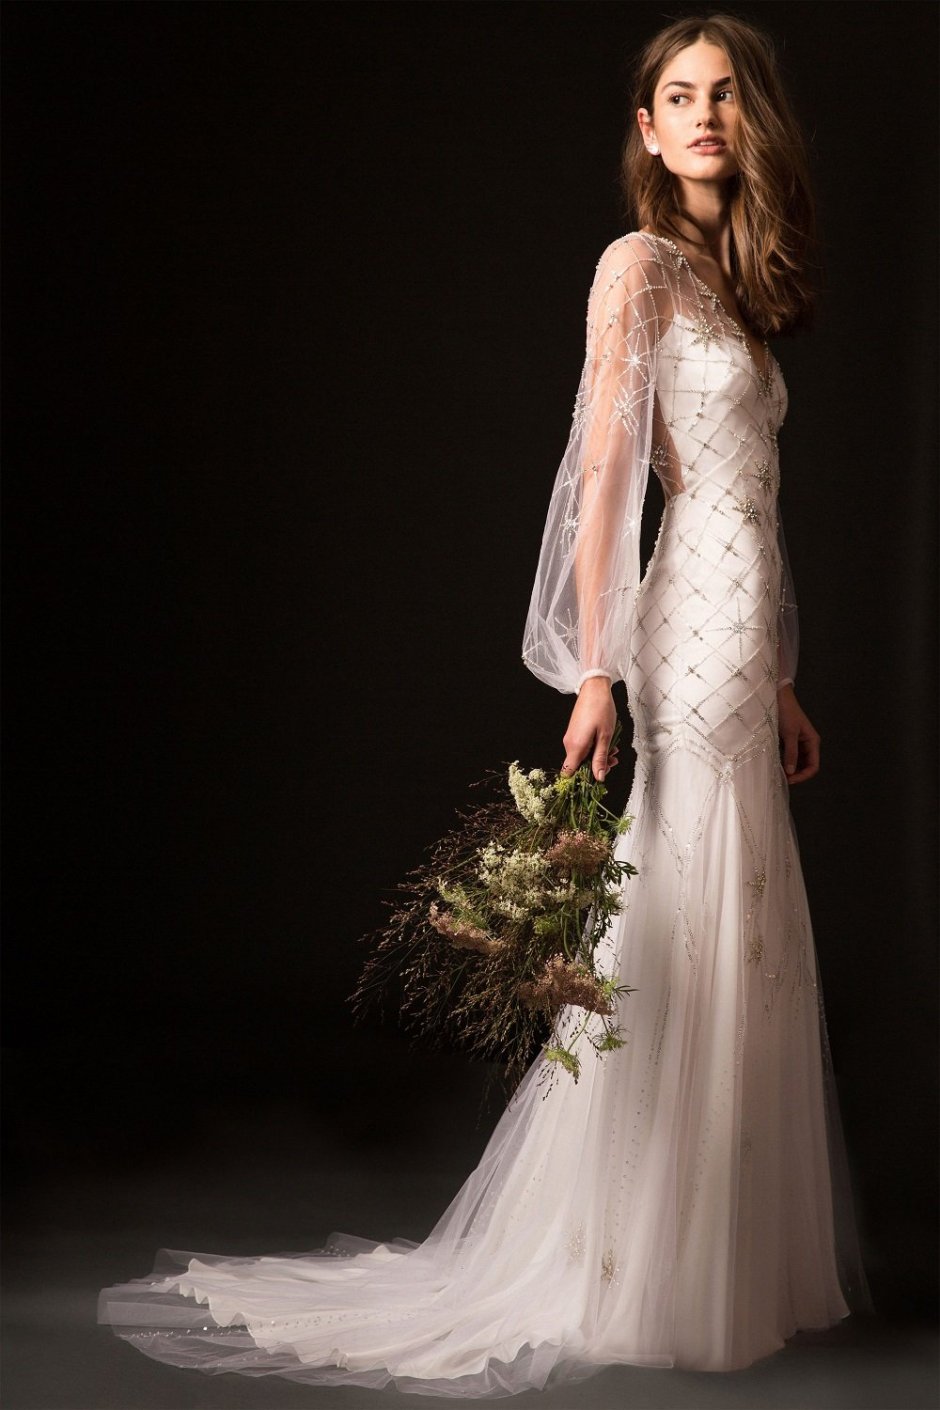 Свадебное платье с букетом